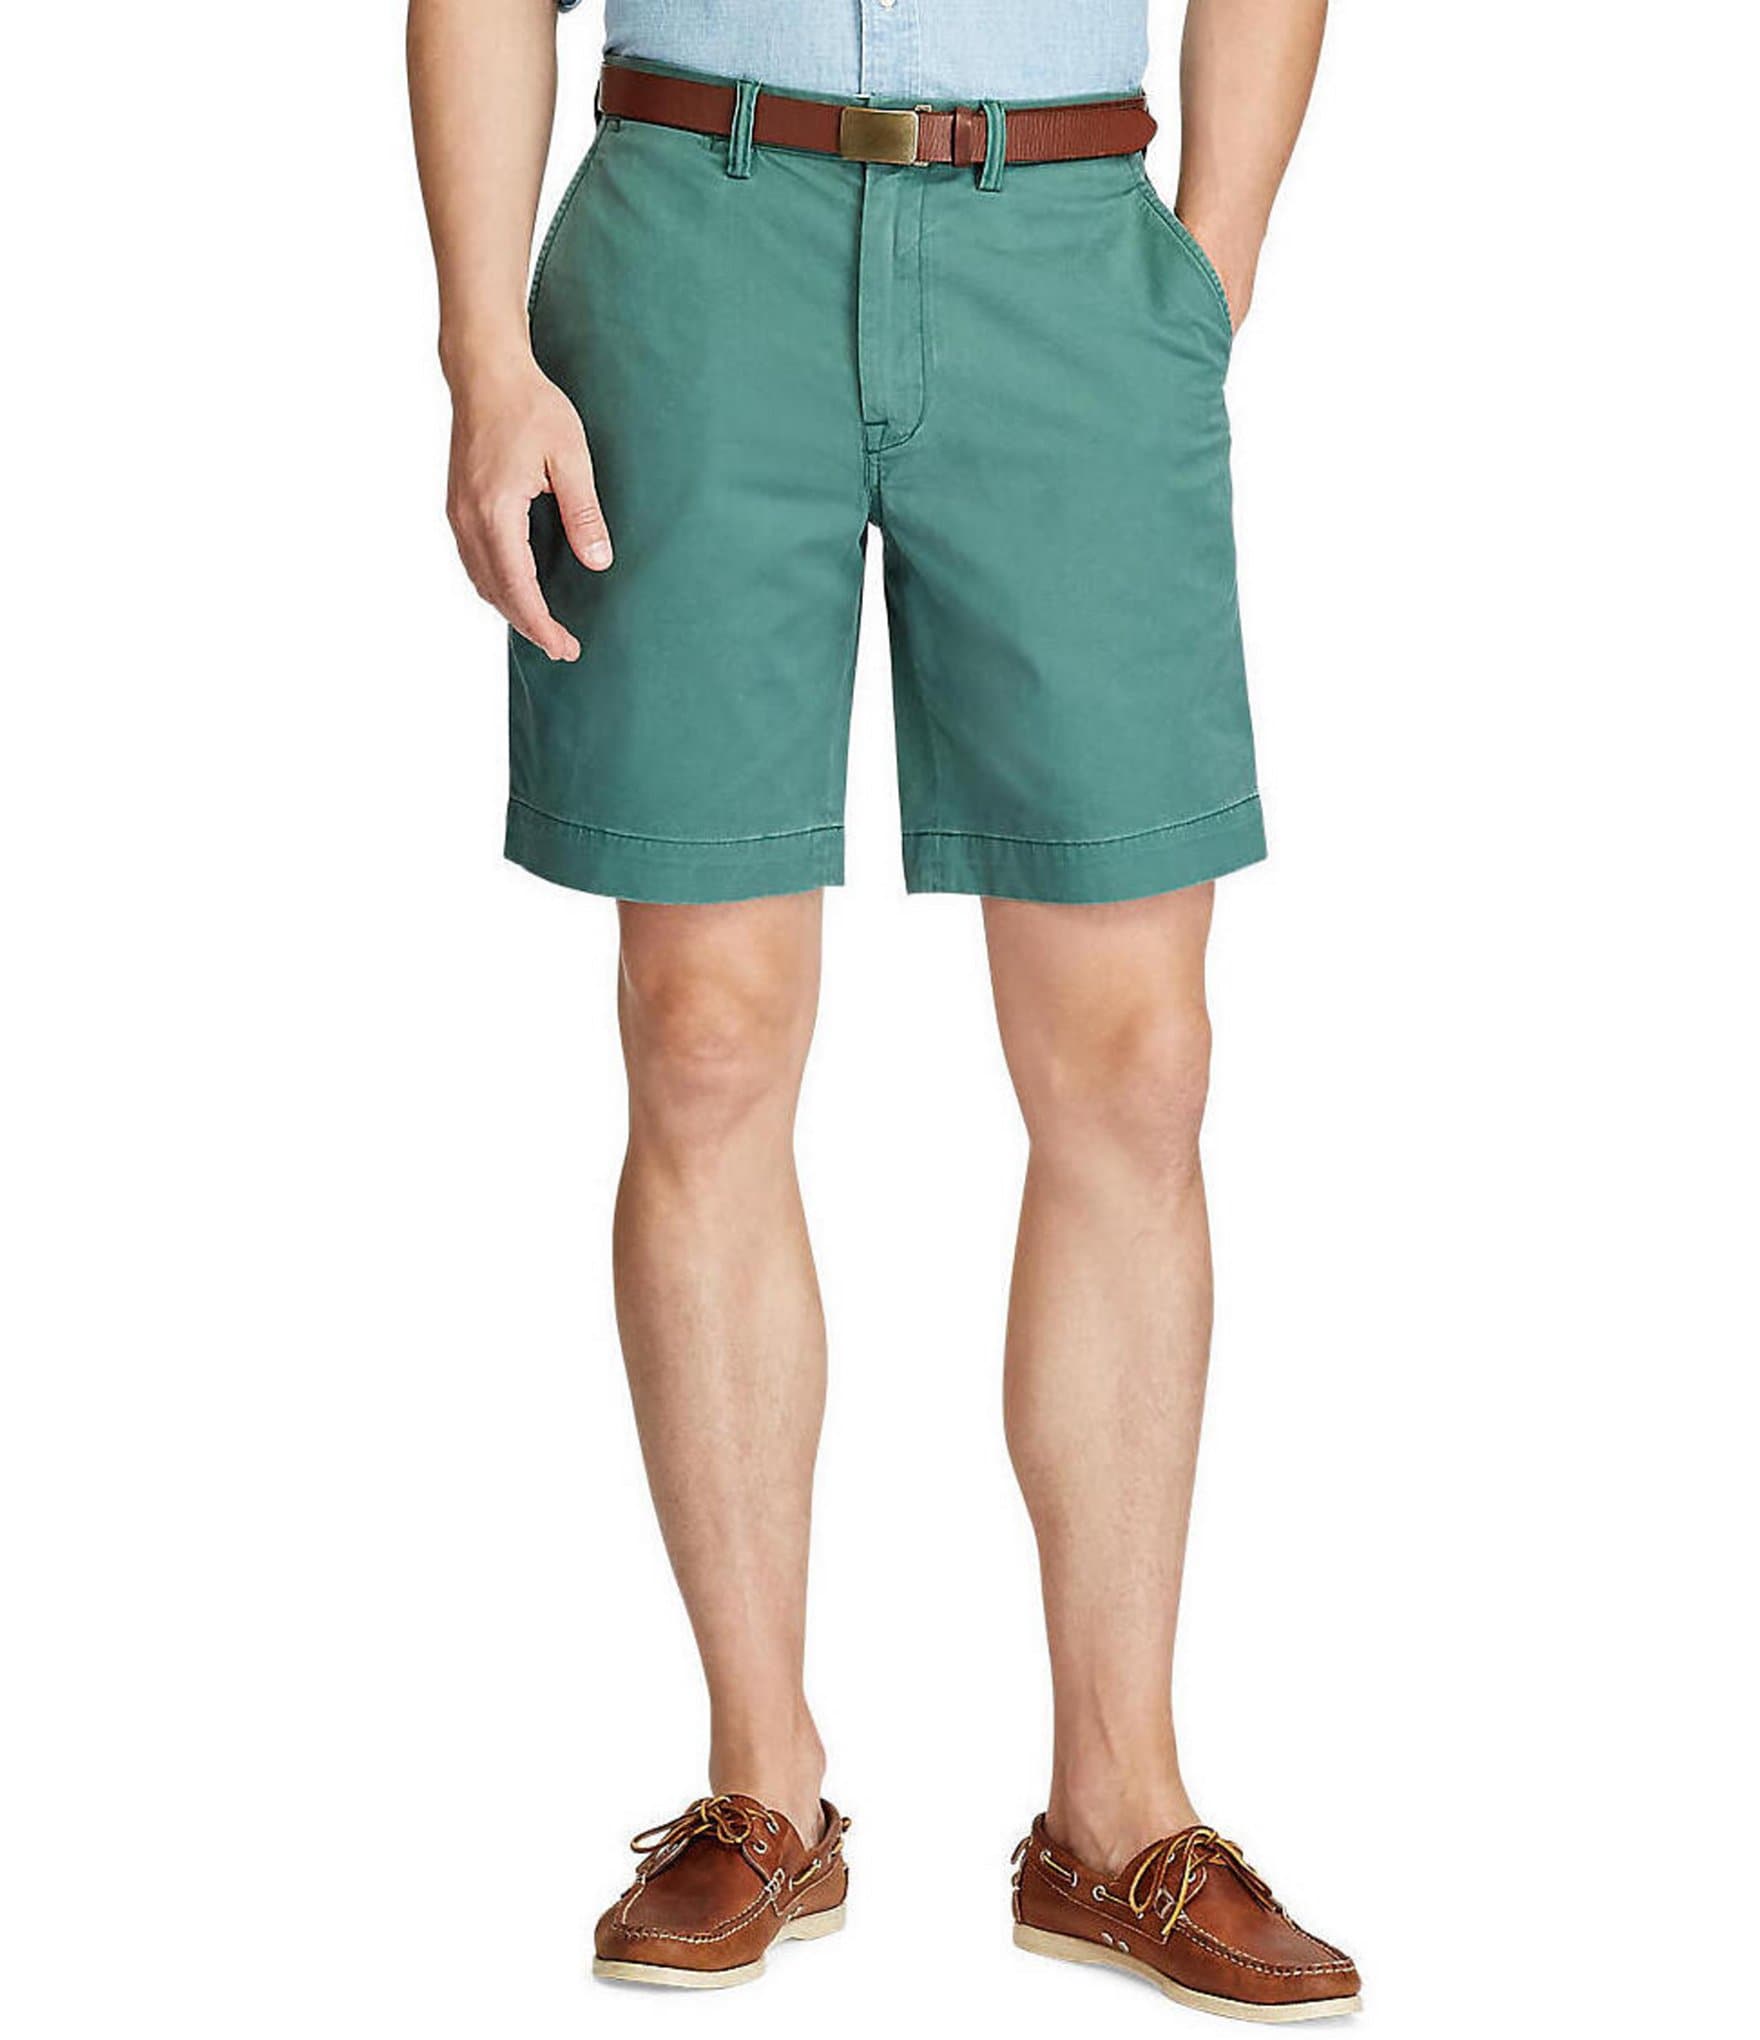 polo men short: Men's Shorts